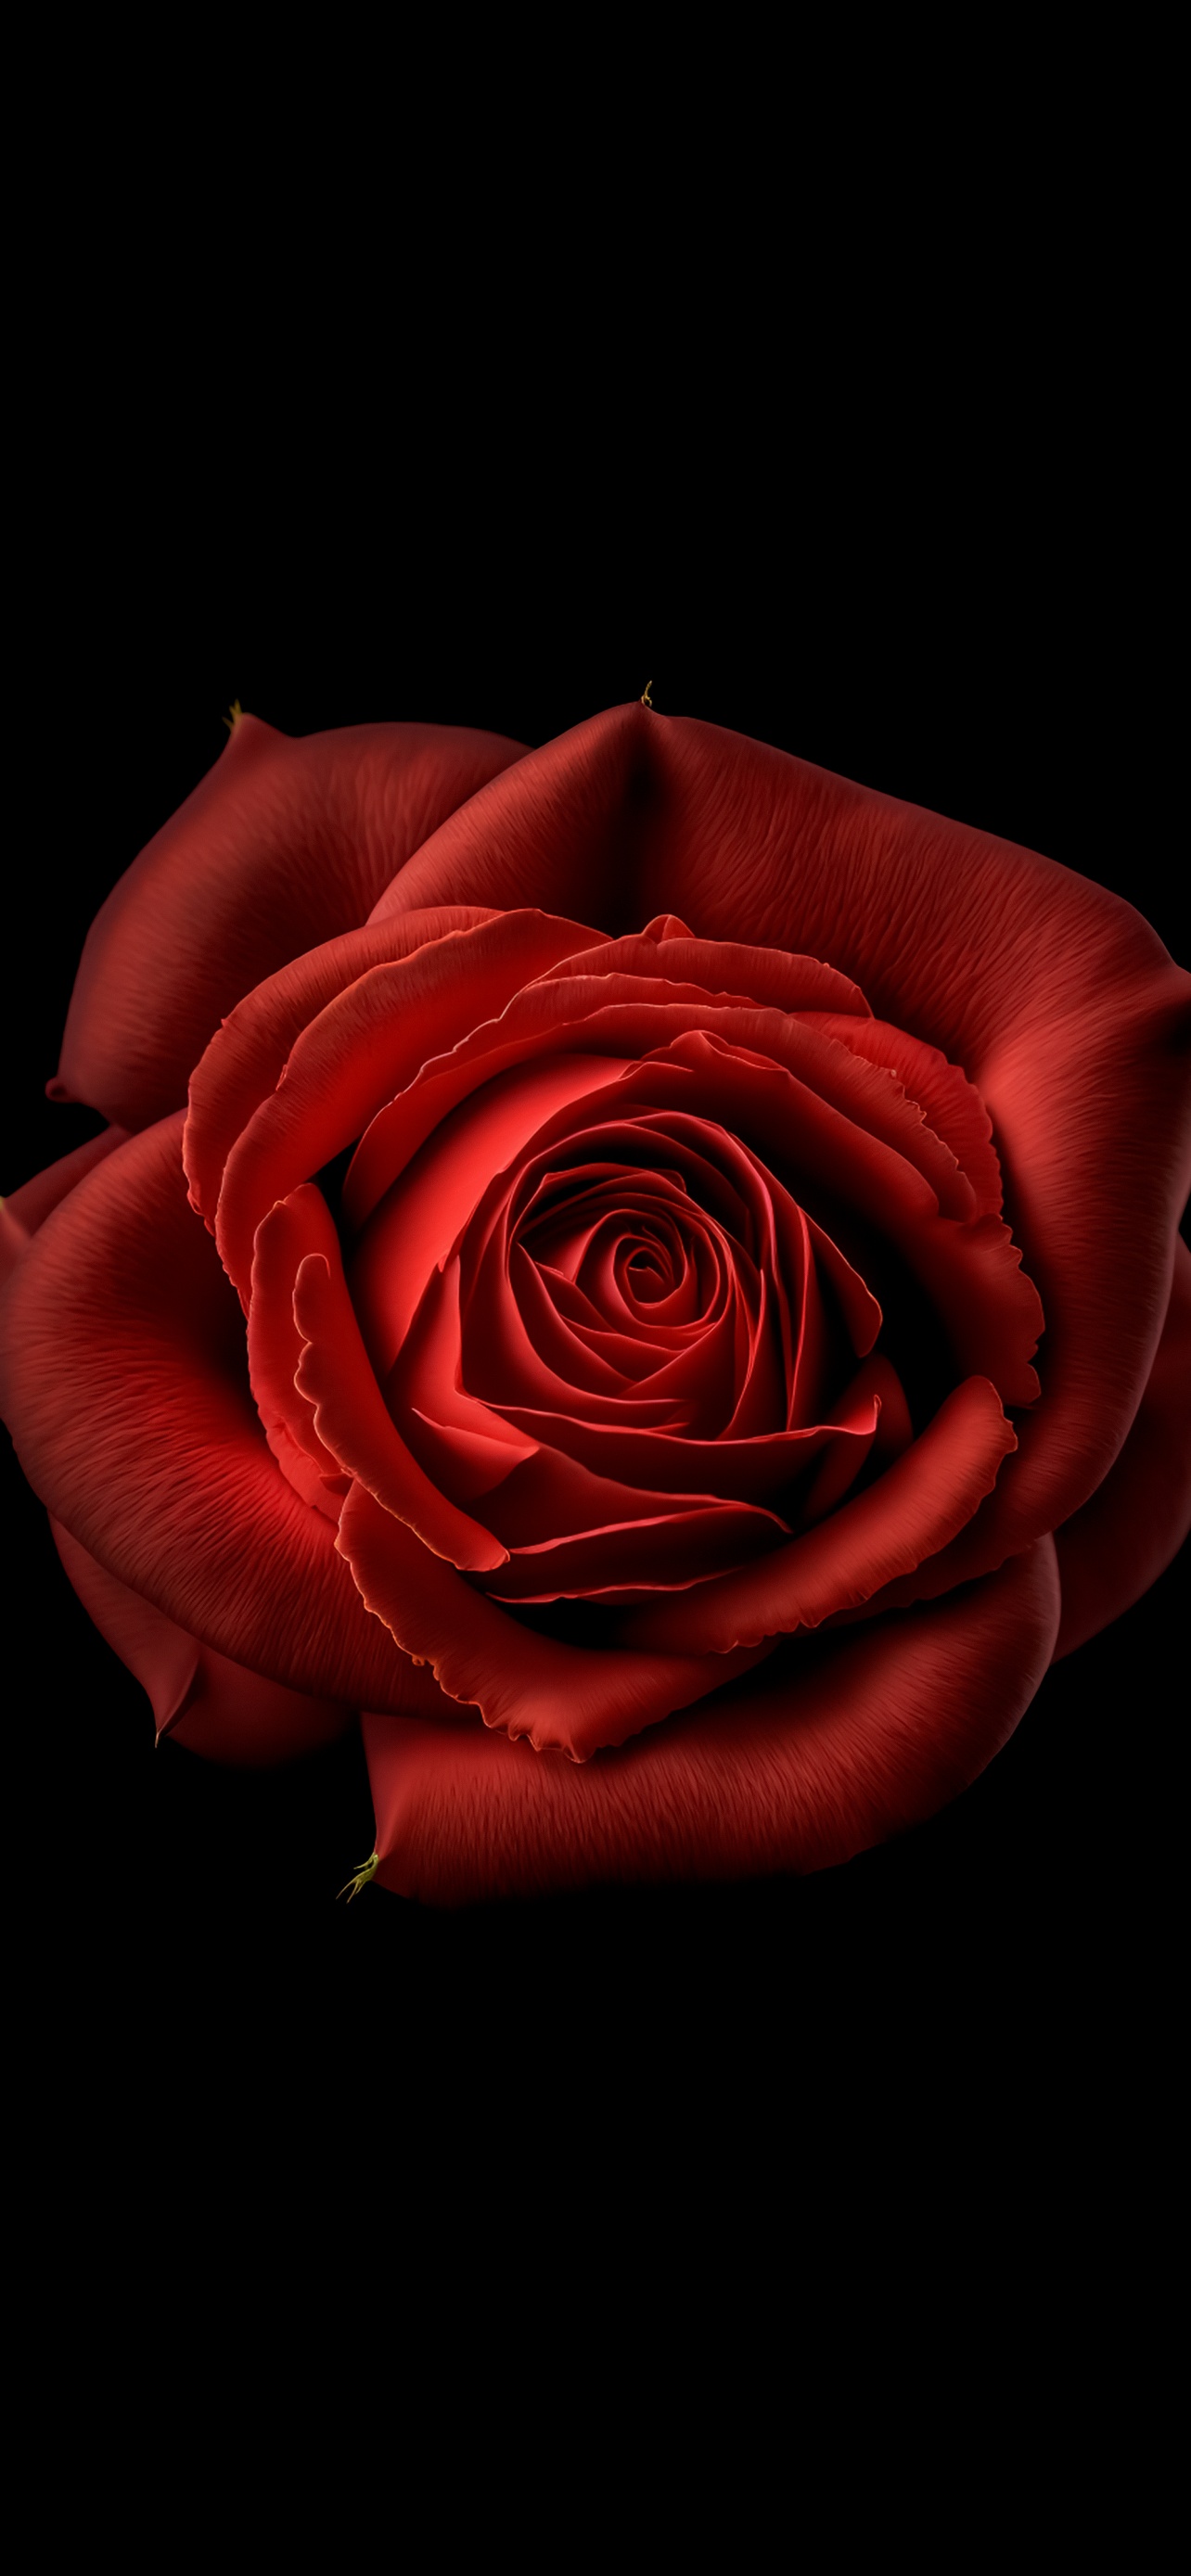 30,000+ Free Red Flower & Rose Images - Pixabay